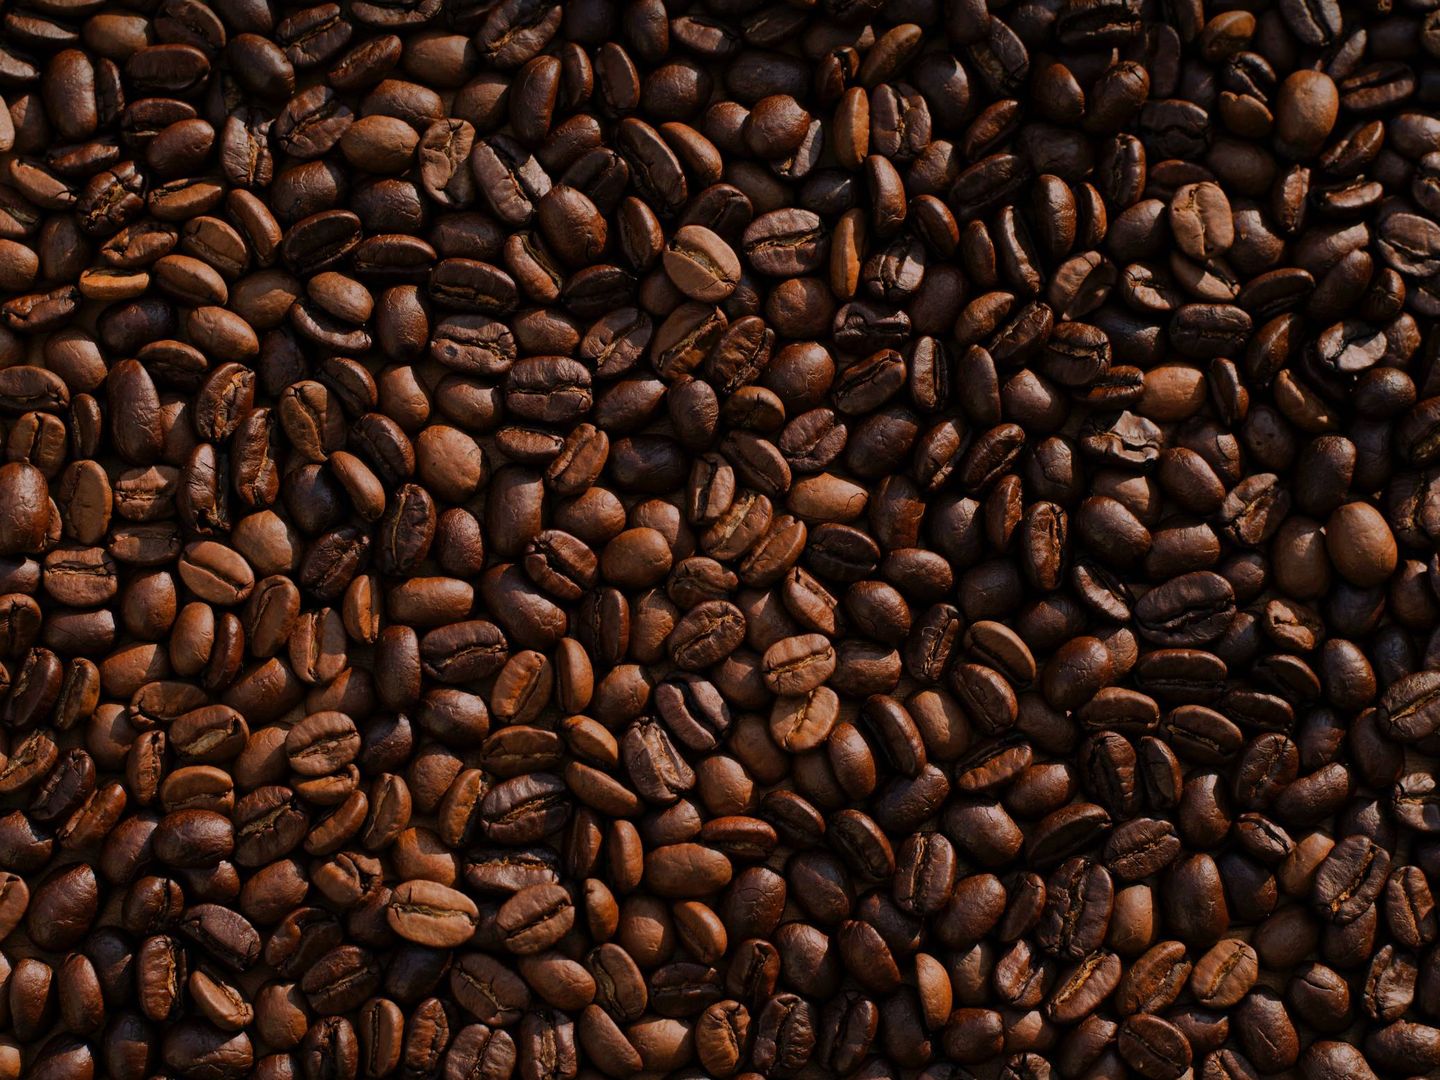 Los granos de café contienen excelentes propiedades (Unsplash)